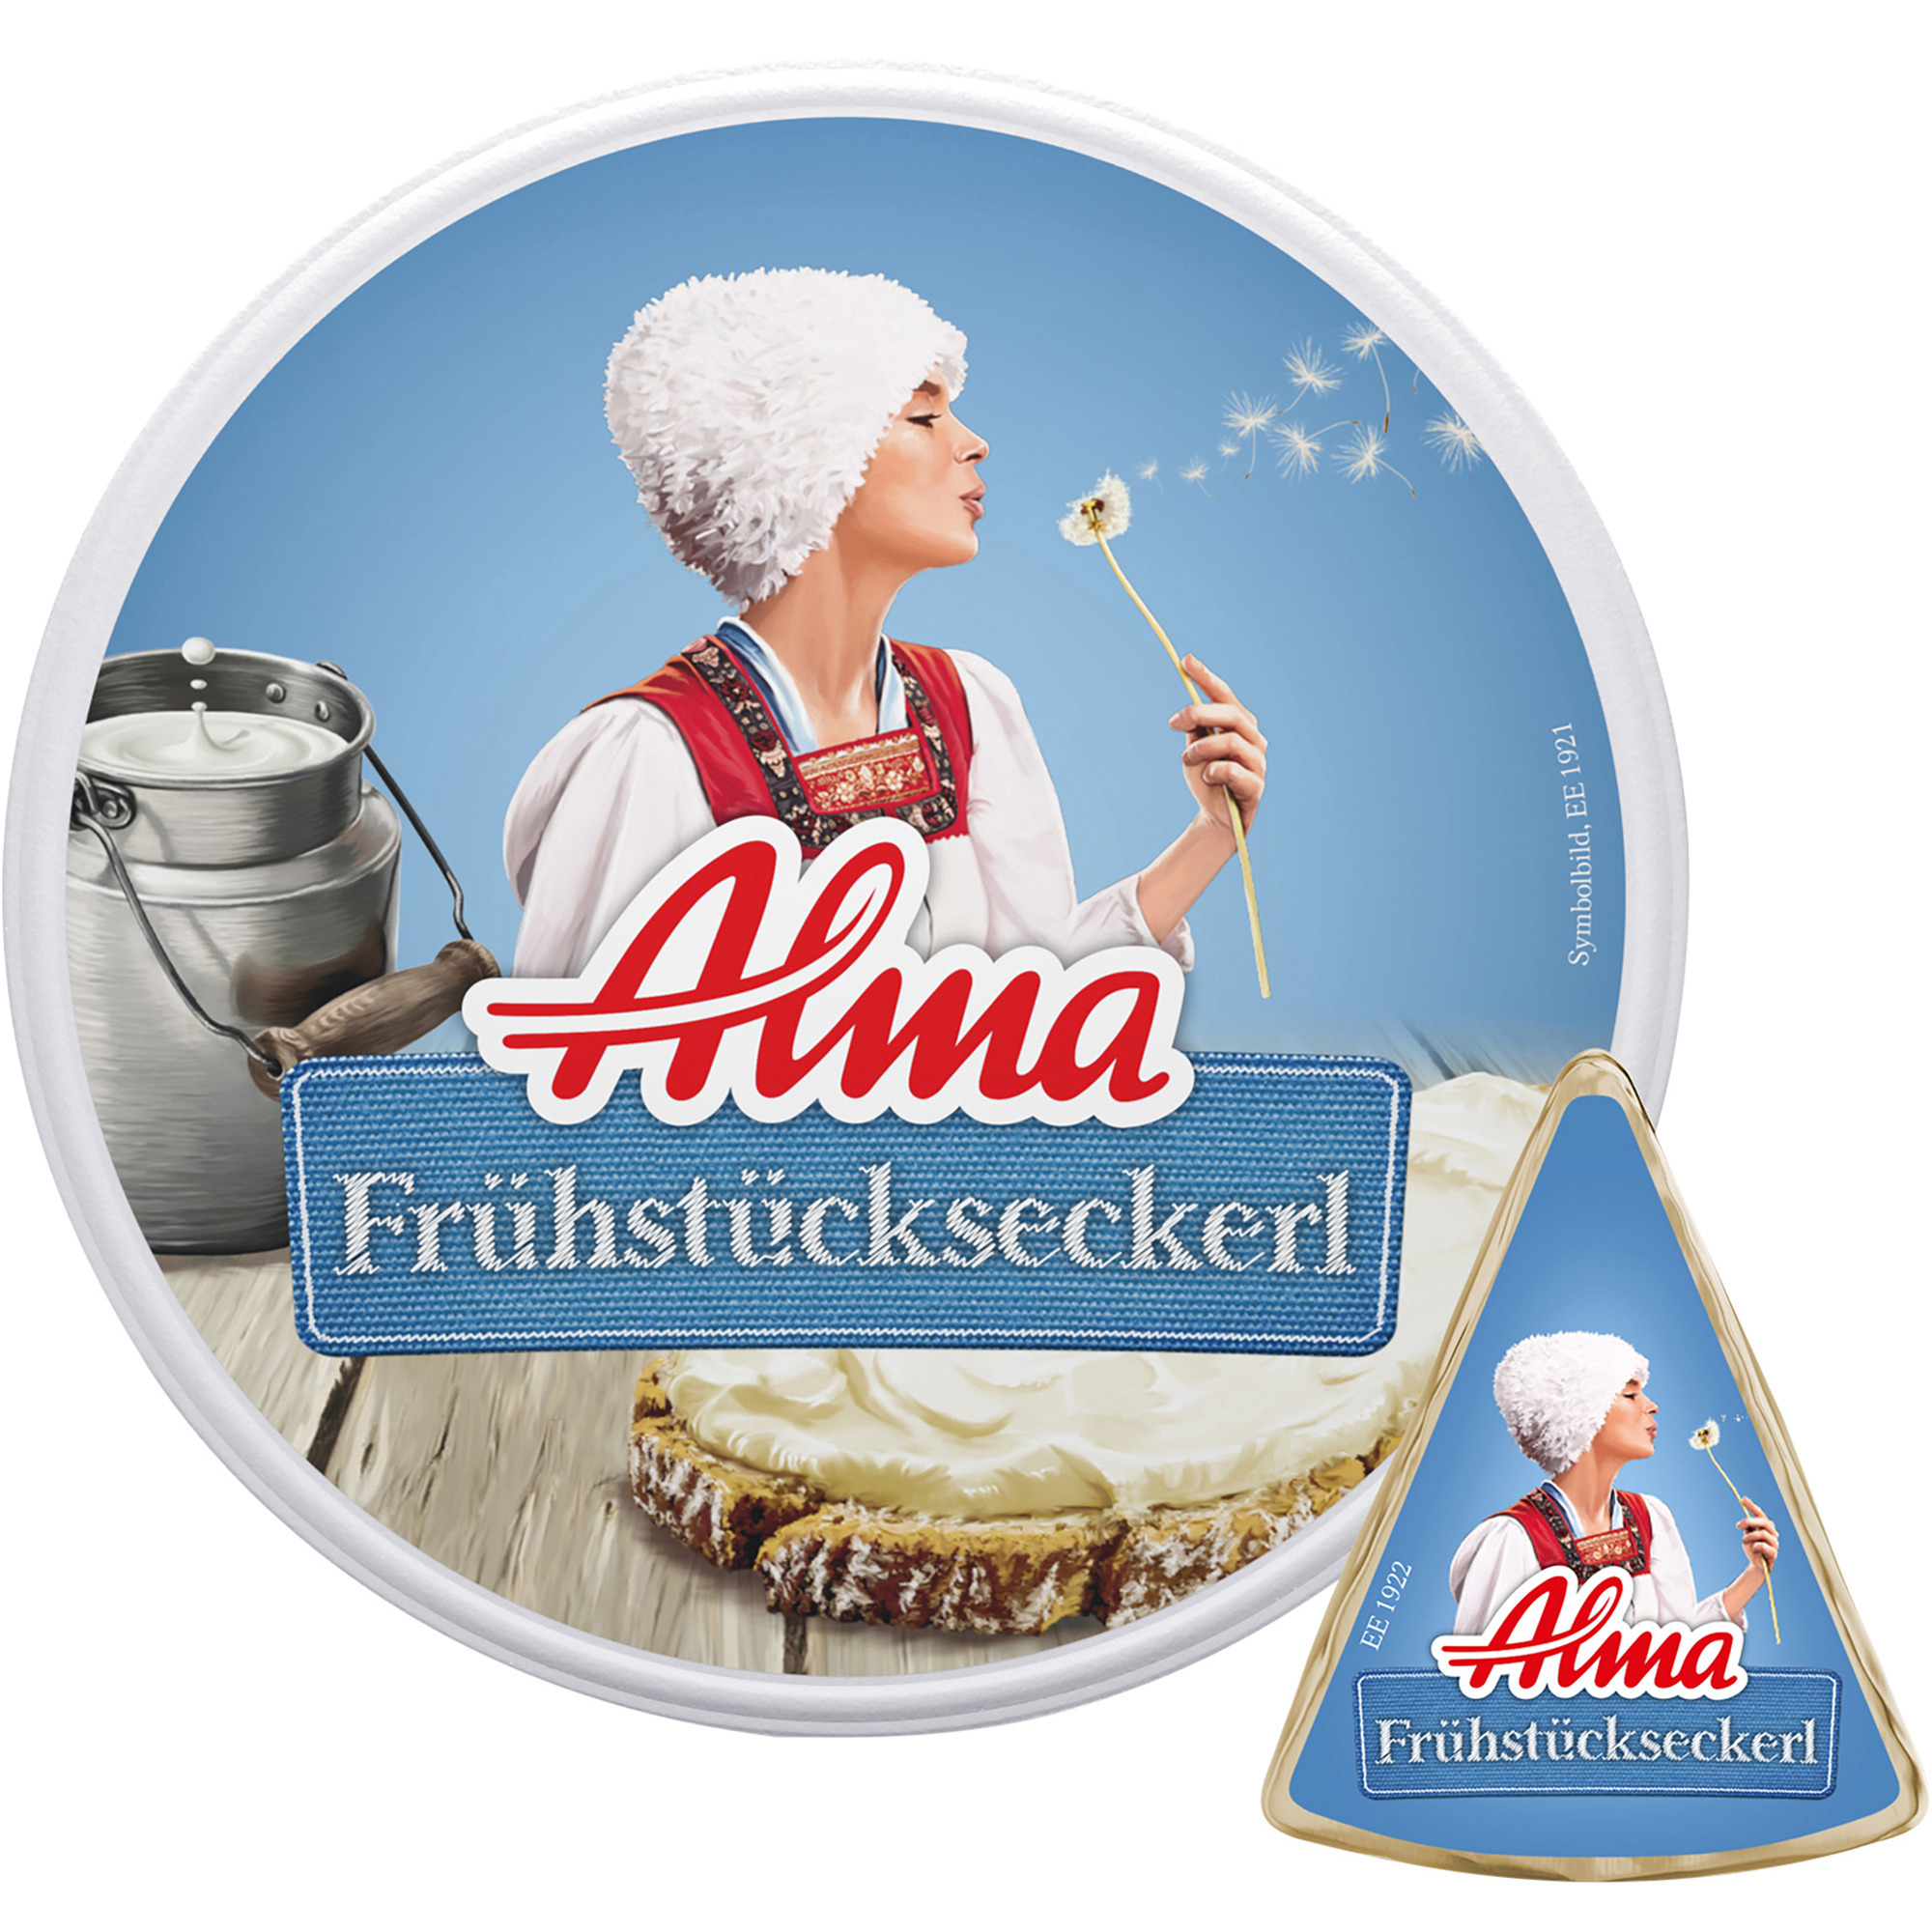 Alma Frühstückseckerl 55% FIT 6x25g